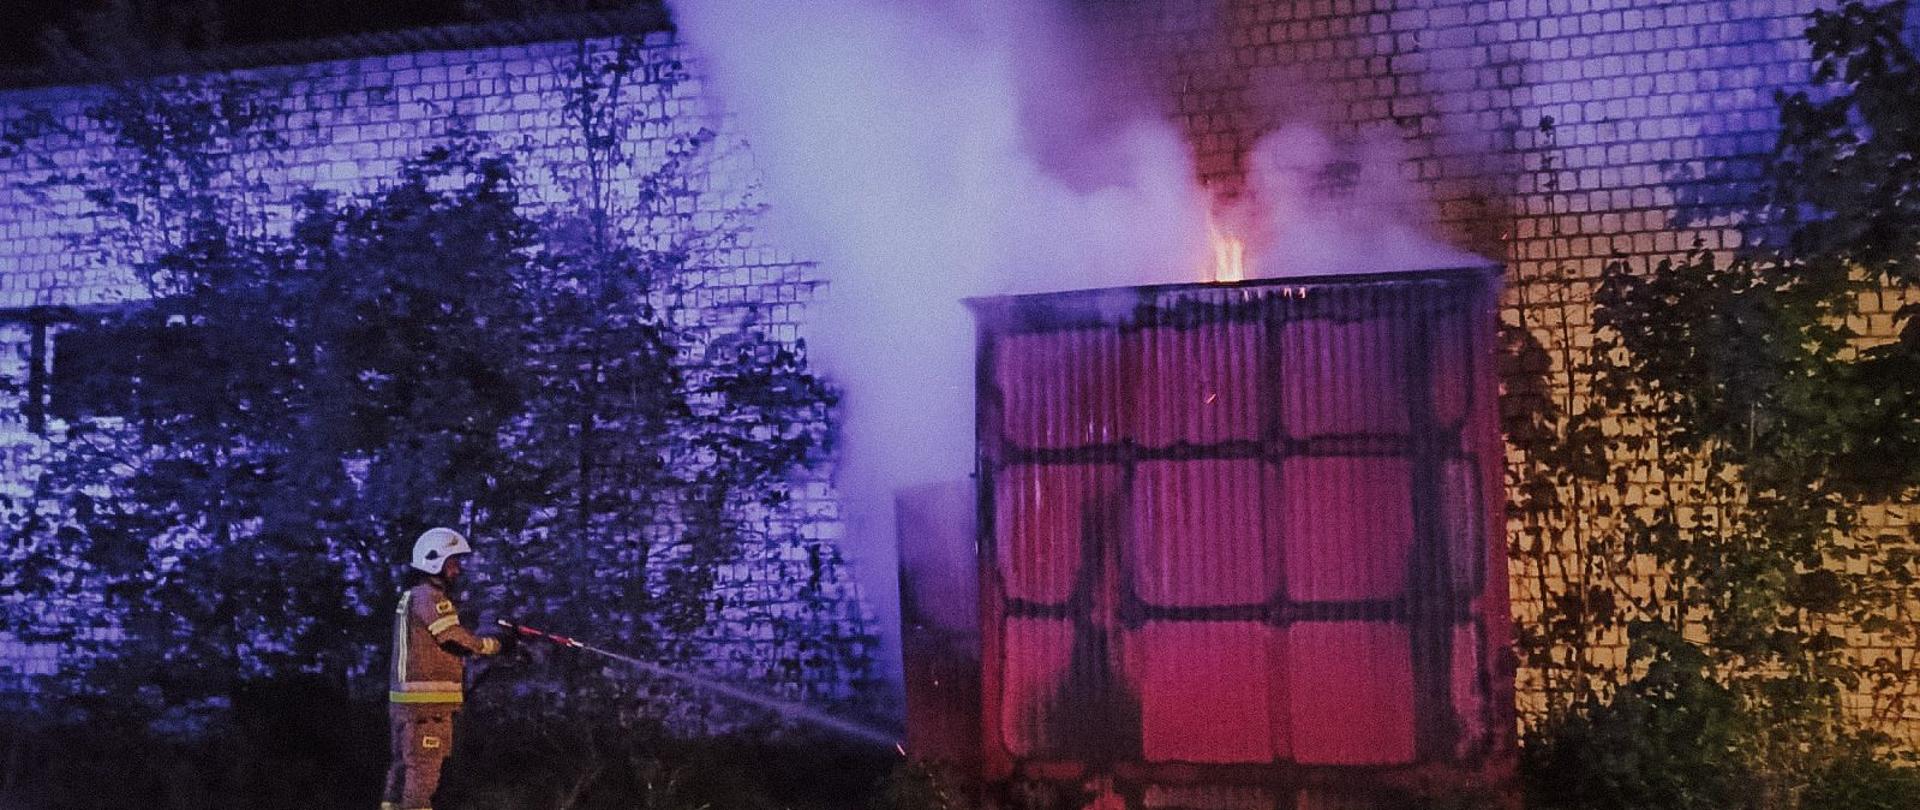 Strażak gasi palący się obiekt. W pobliżu krzewy i zabudowania. Zdjęcie wykonane w porze nocnej.